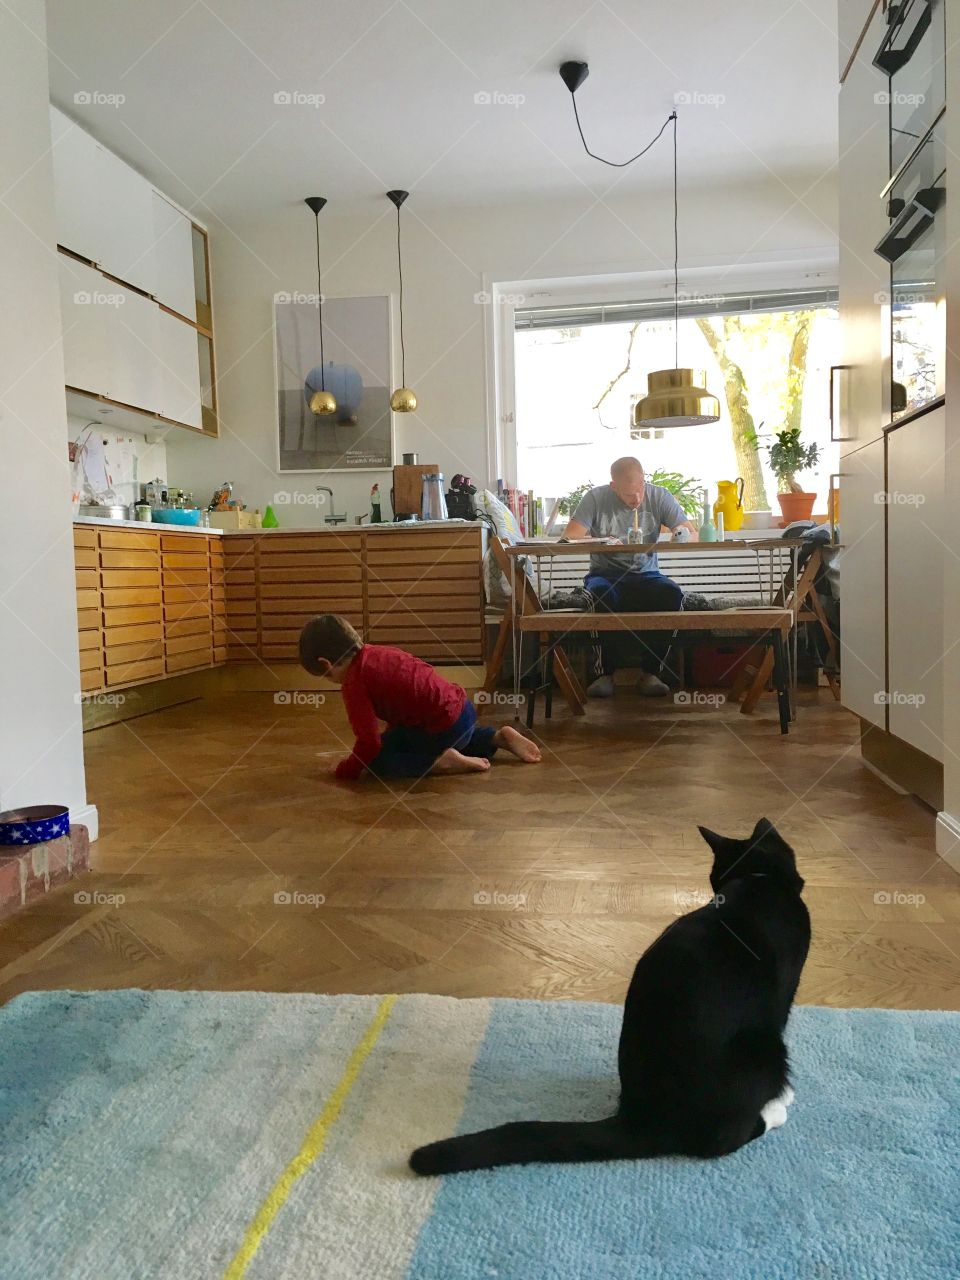 Cat, boy and dad in modern kitchen